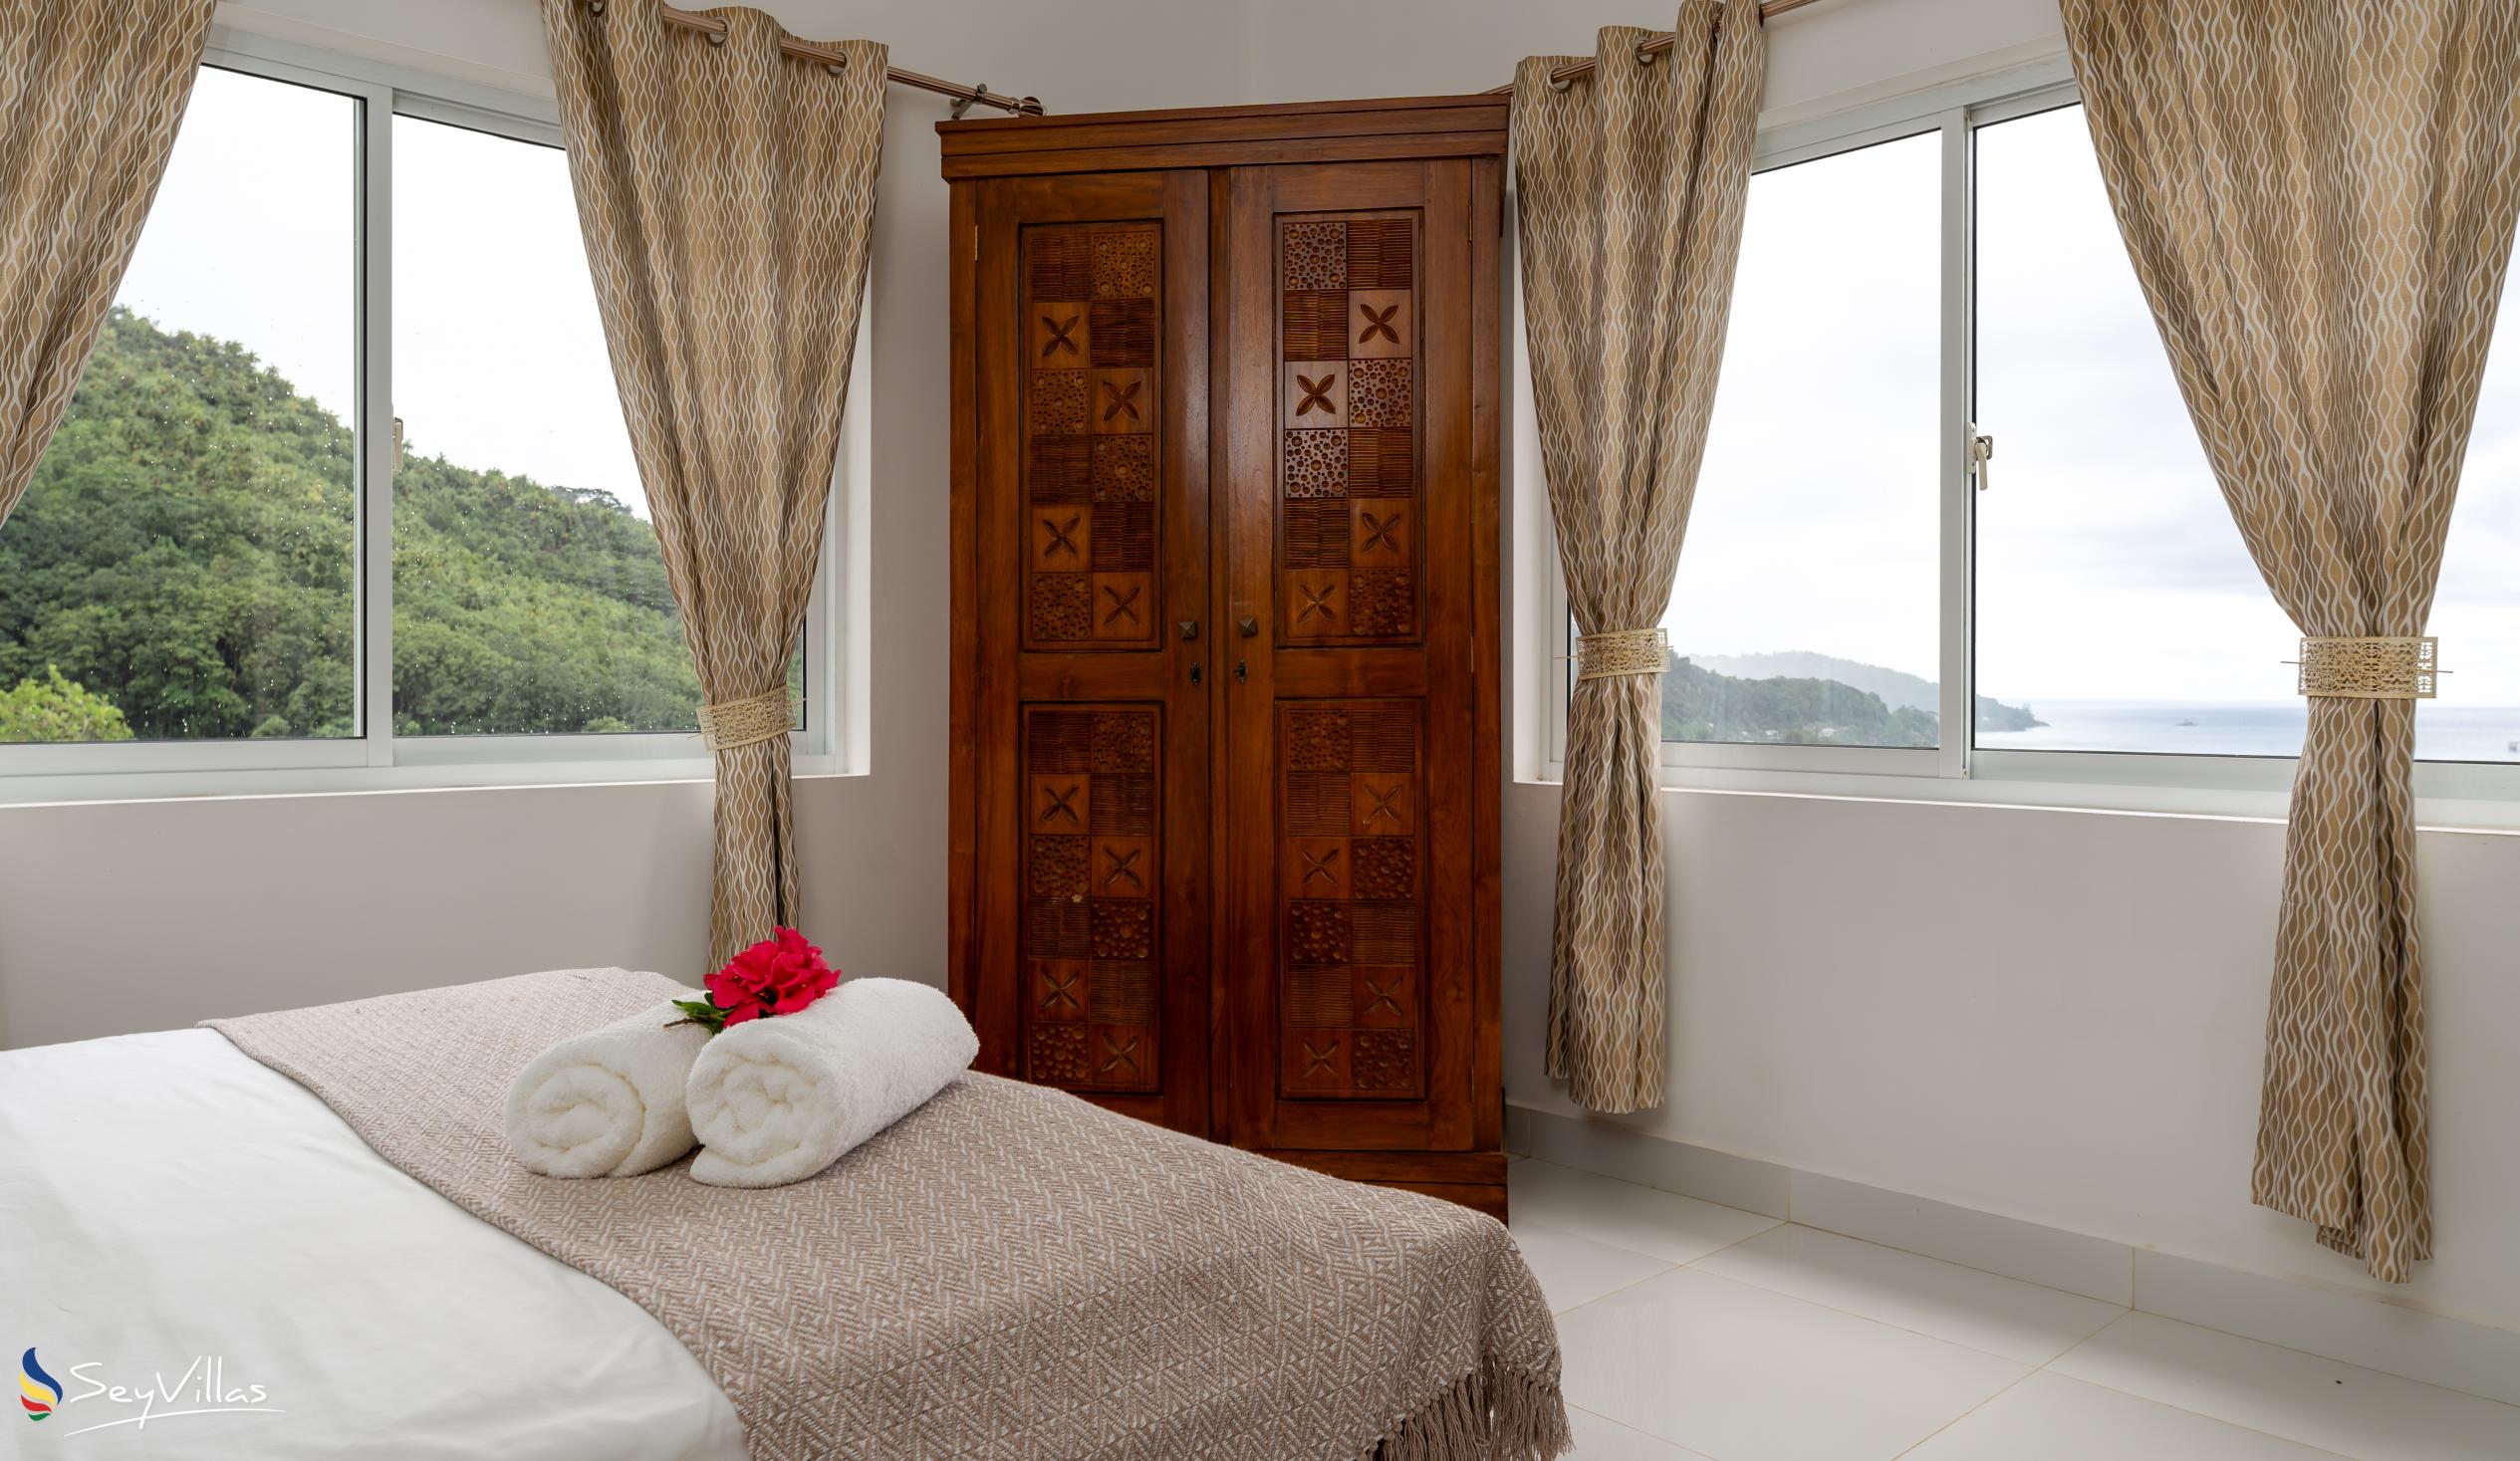 Photo 50: Cella Villa - 2-Bedroom Apartment - Mahé (Seychelles)